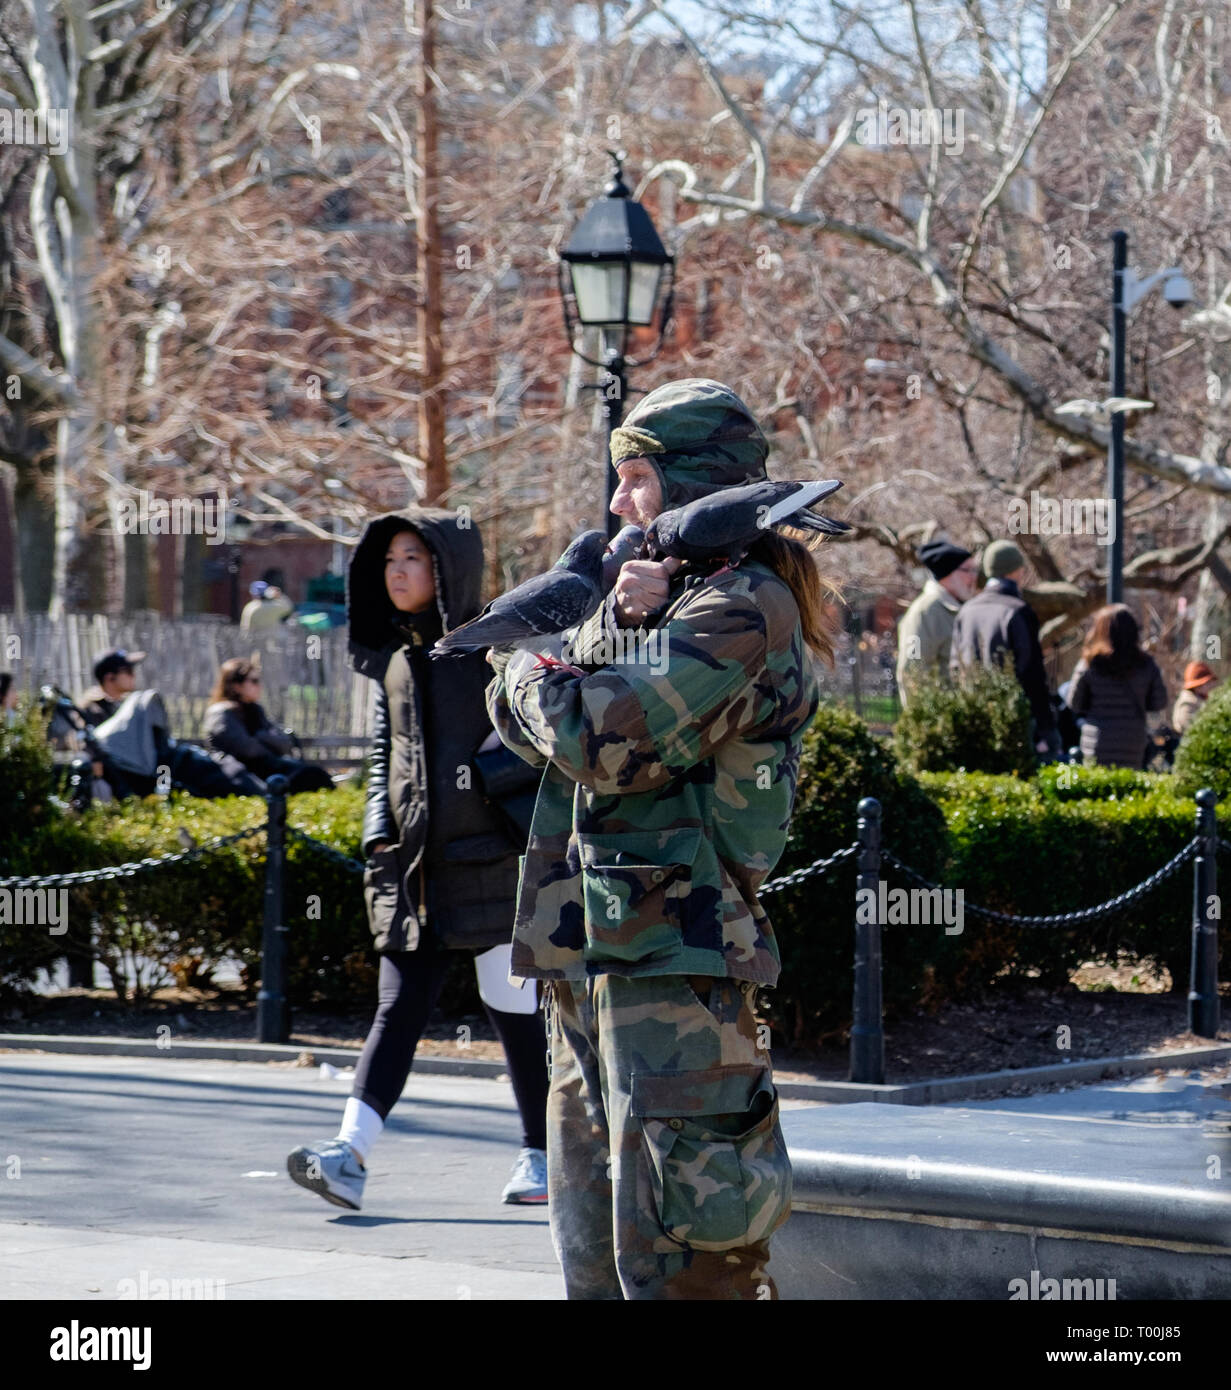 Larry The Birdman tient et enfile les pigeons au parc Washington Square, Greenwich Village New York. Mars 2018 Banque D'Images